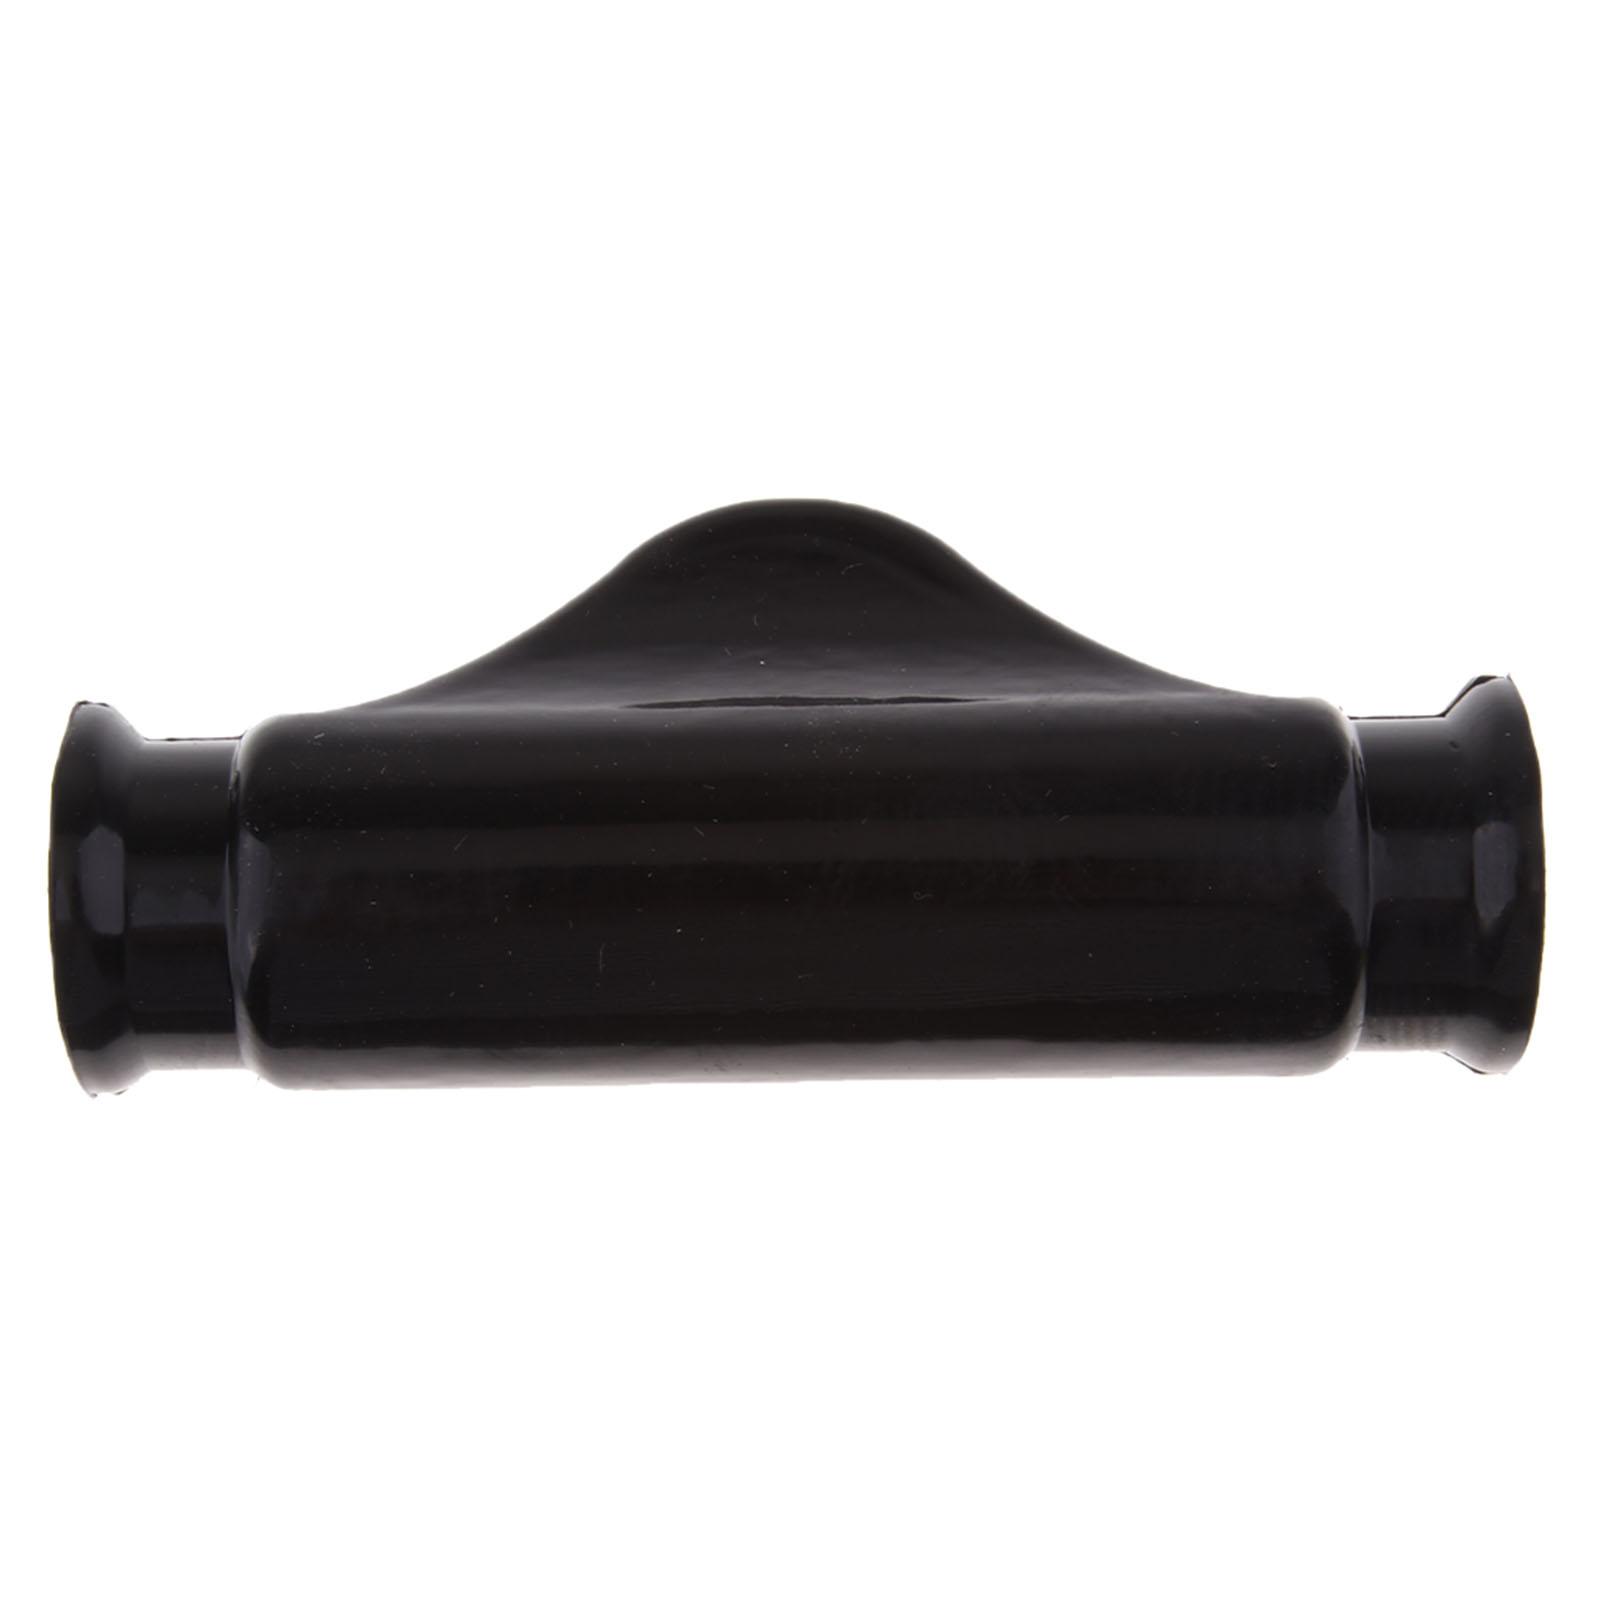 Black Handlebar Handle Bar Pad Protector Cover For YAMAHA PW50 PW 50